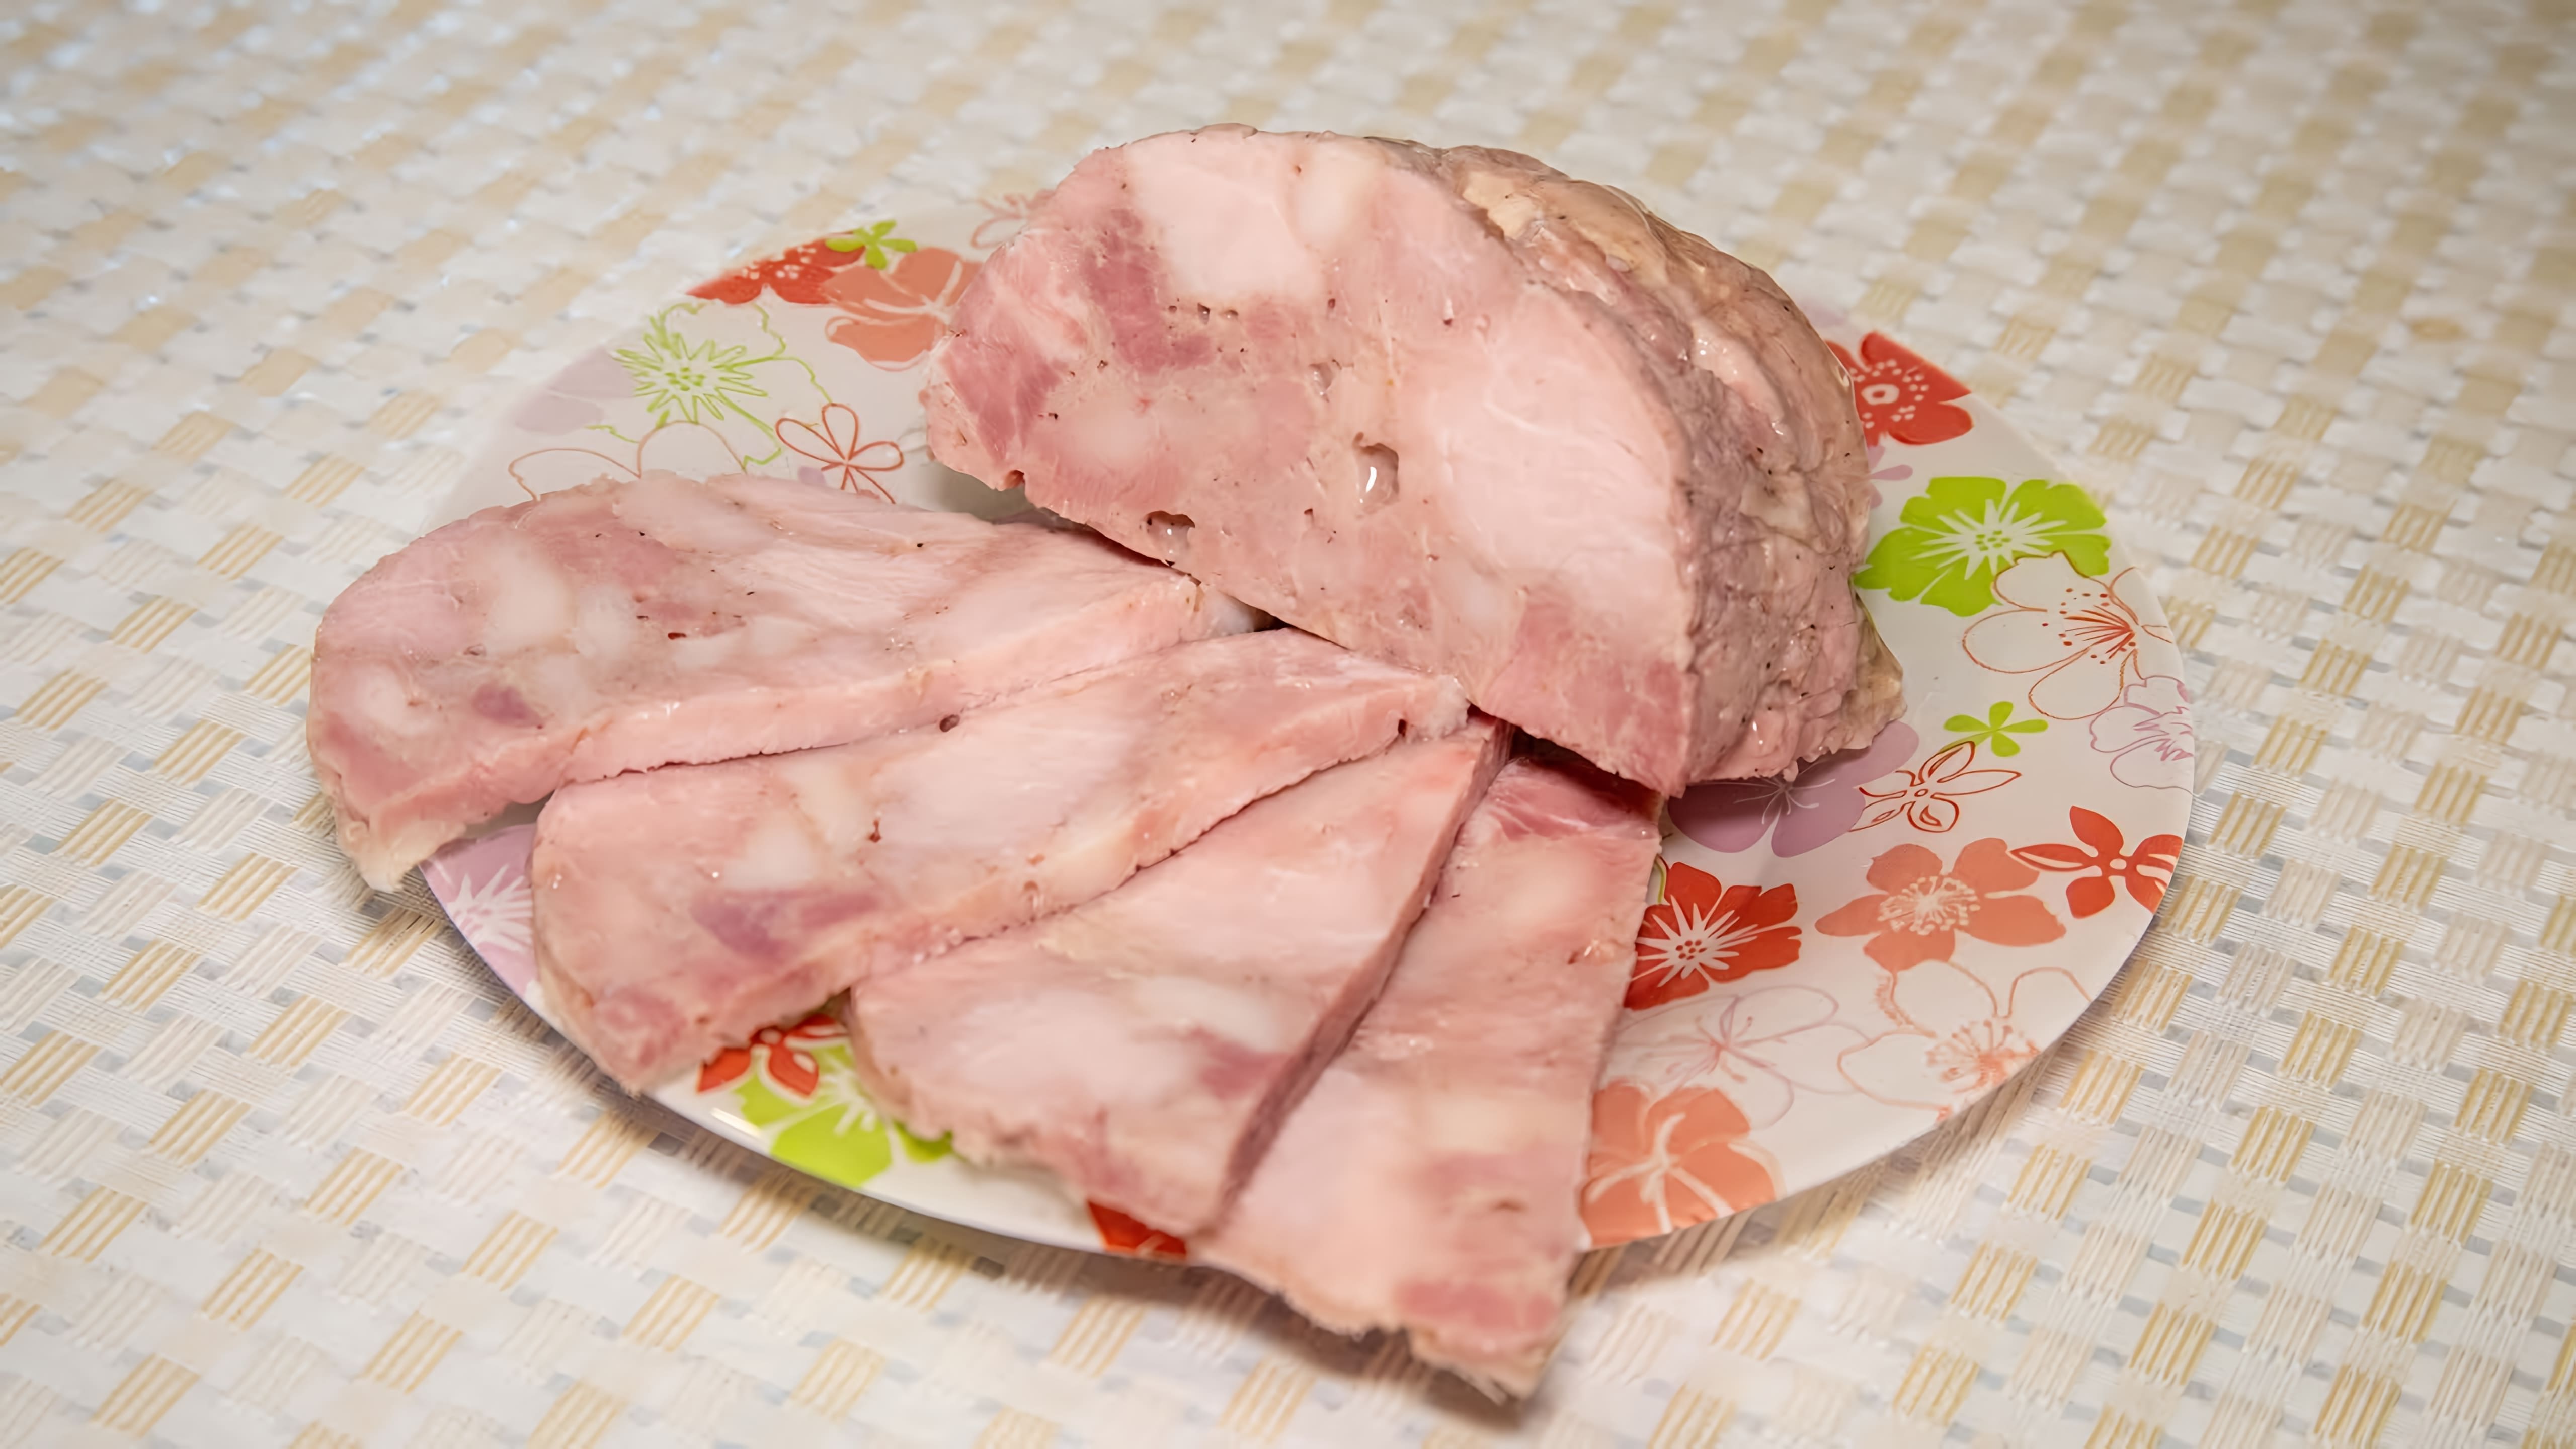 В этом видео демонстрируется процесс приготовления домашней ветчины из свинины и куриных бедер